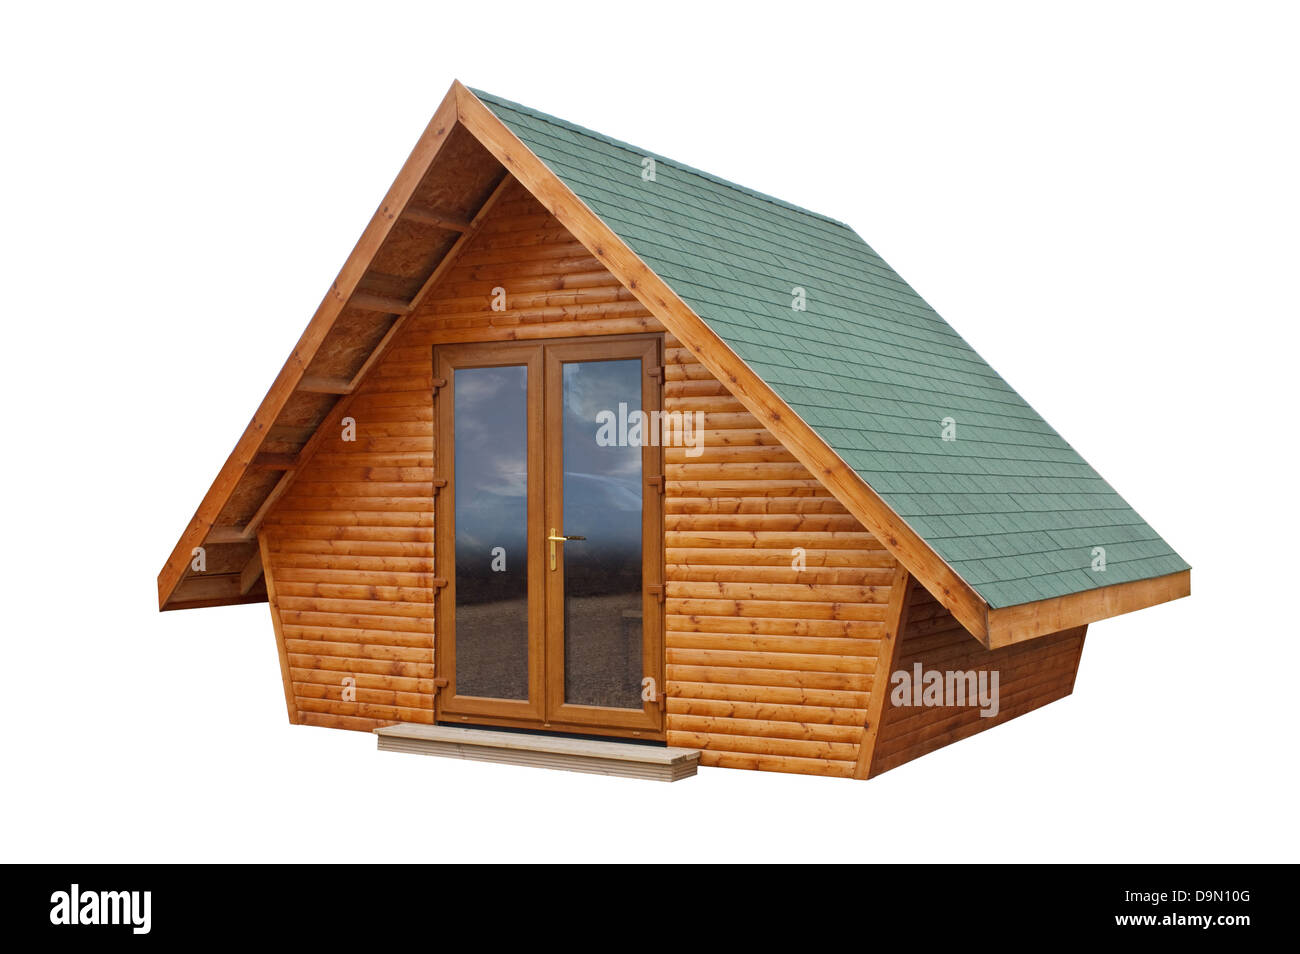 Outdoor-Holzschuppen, hergestellt aus Holz Beplankung ein tolles Extras Zimmer in Ihrem Garten Stockfoto